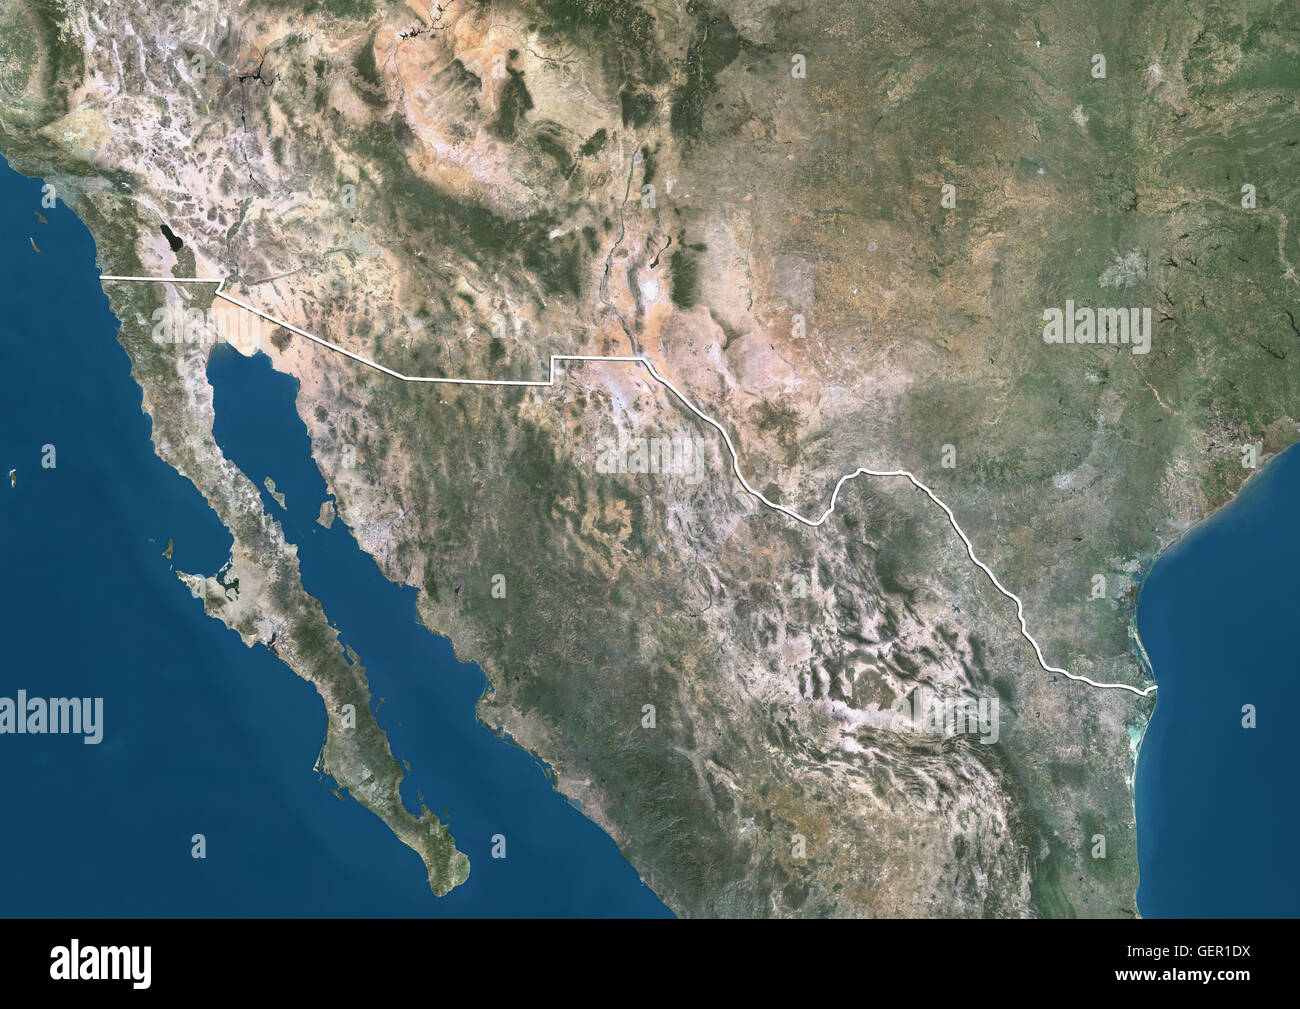 Vista satélite de la Frontera México - EU (con los límites del país). Esta imagen fue compilado a partir de datos adquiridos por los satélites Landsat 7 y 8. Foto de stock